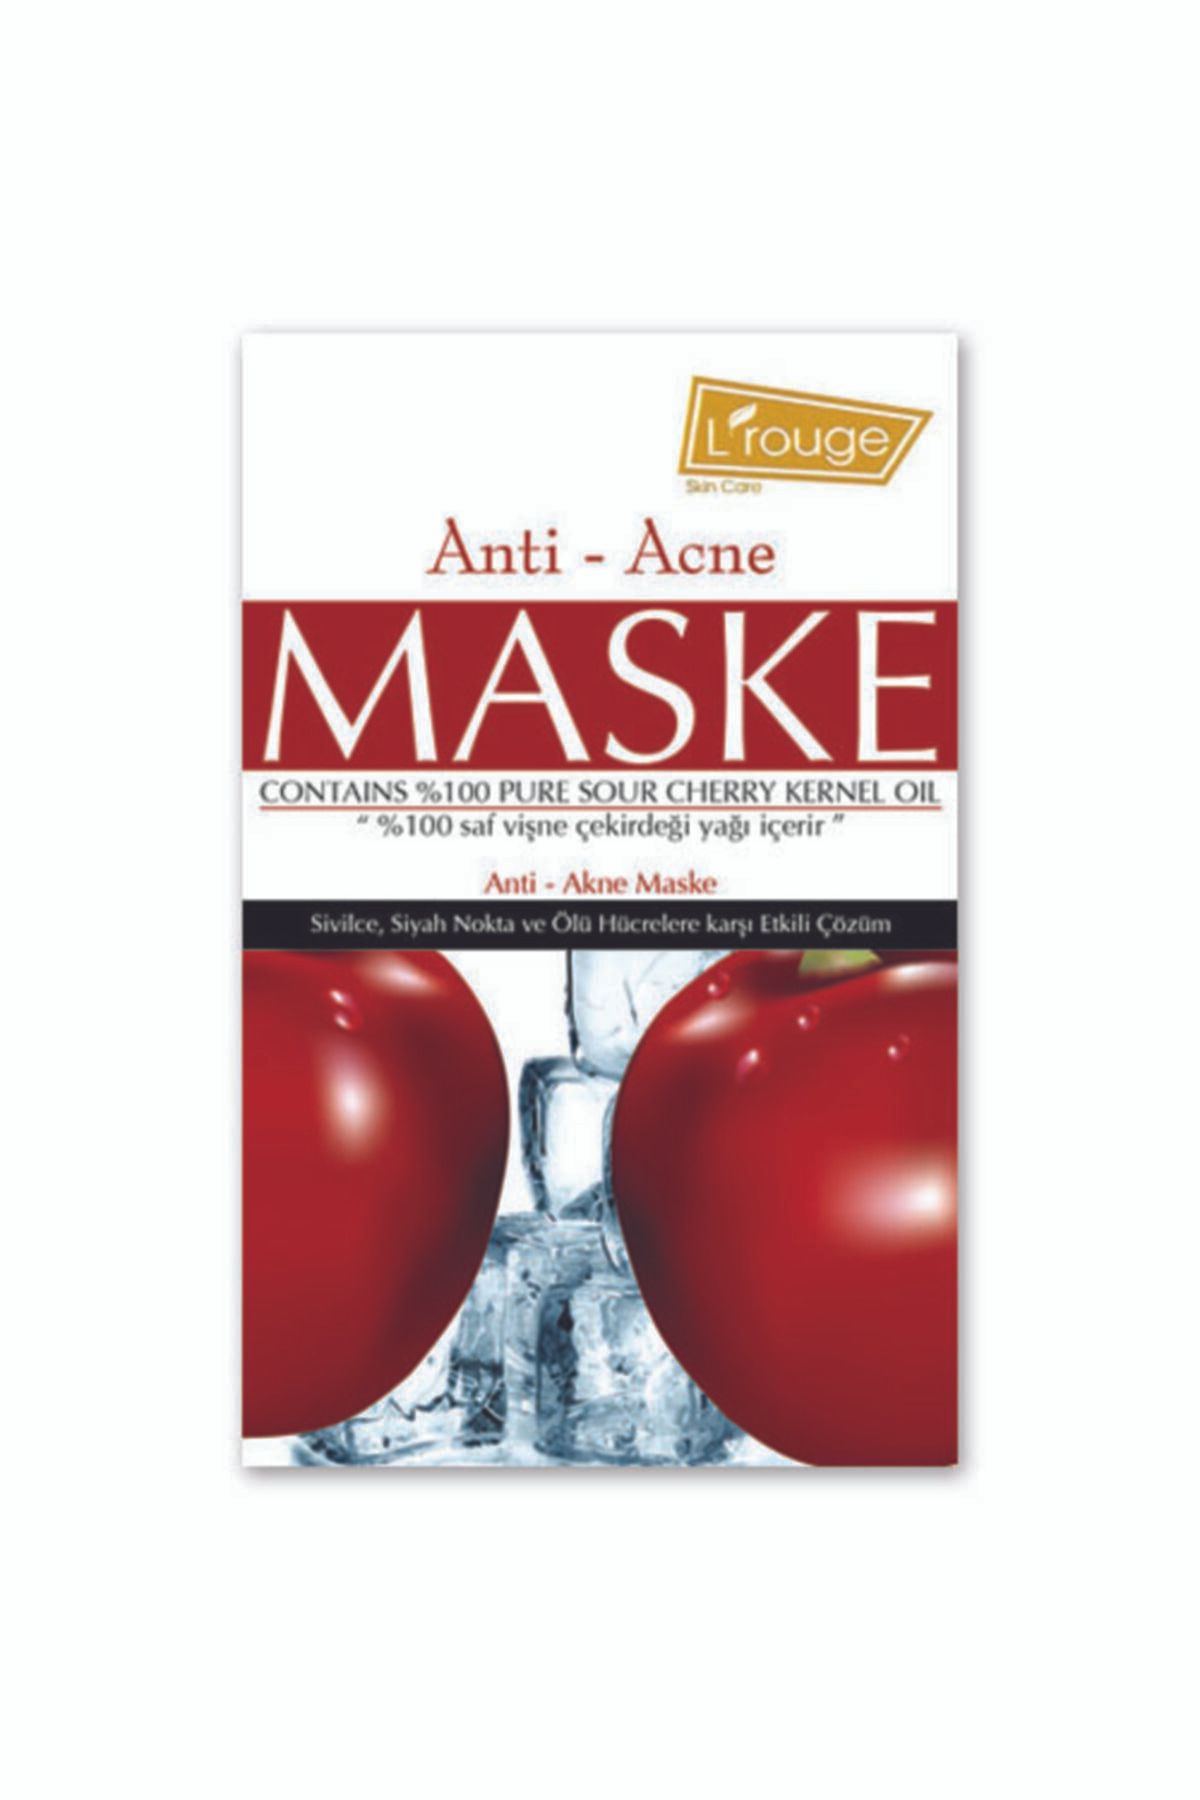 L'ROUGE Anti-acne Maske 6x15 ml %100 Saf Vişne Çekirdeği Yağı